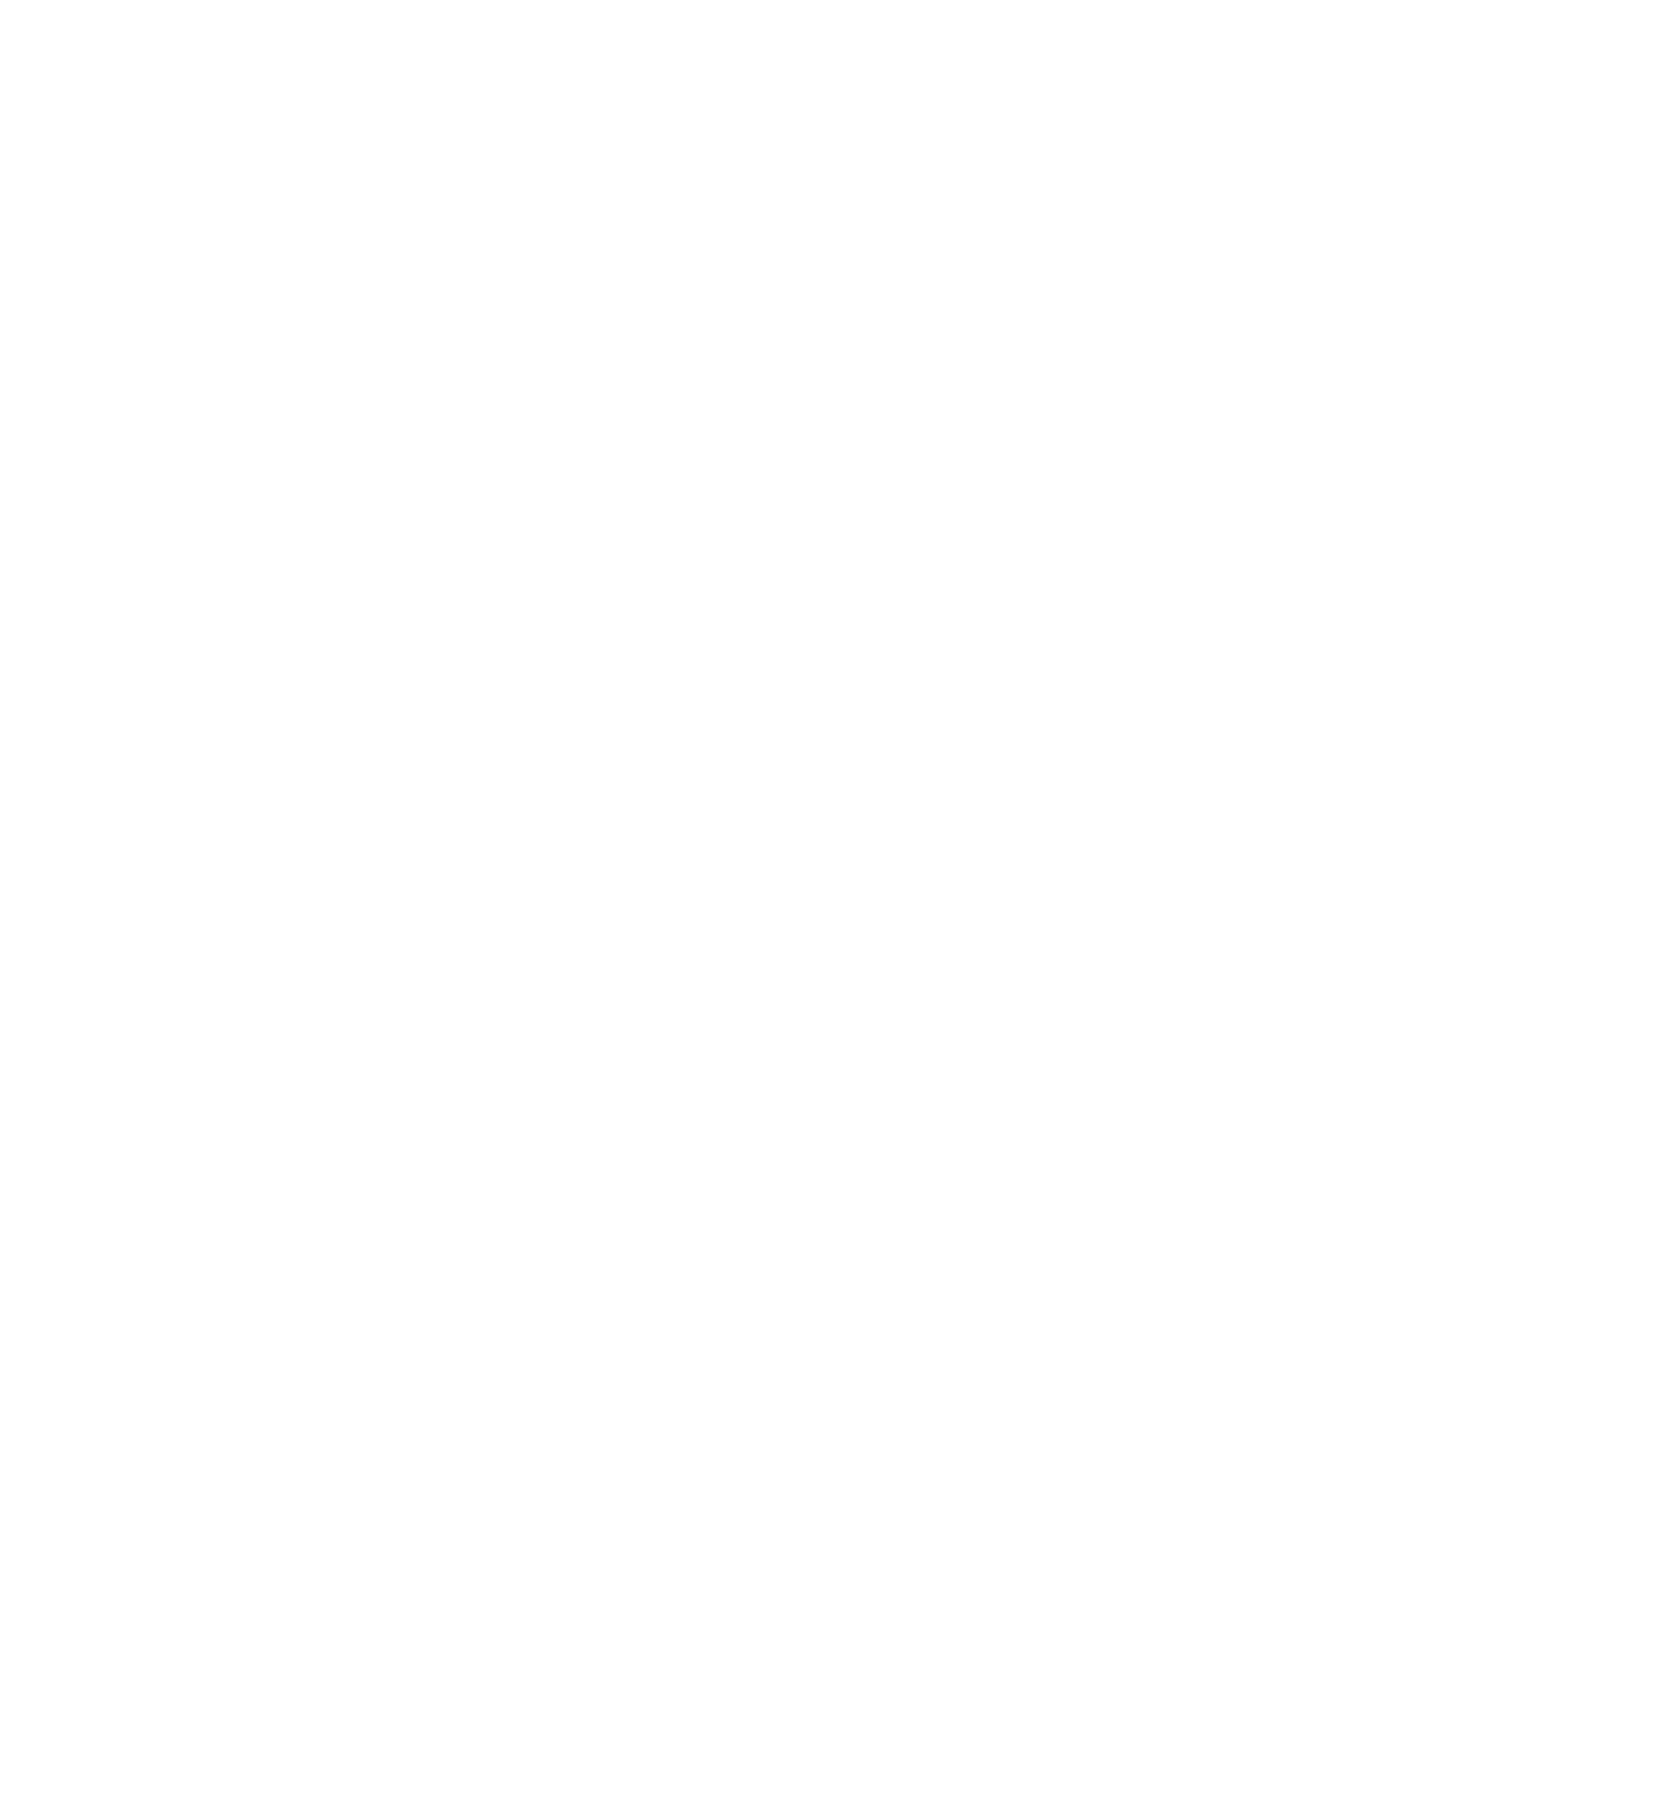 Фото Логотип для стойки рецепции из черного алюминиевого композита, крепление на дистанционные держатели.